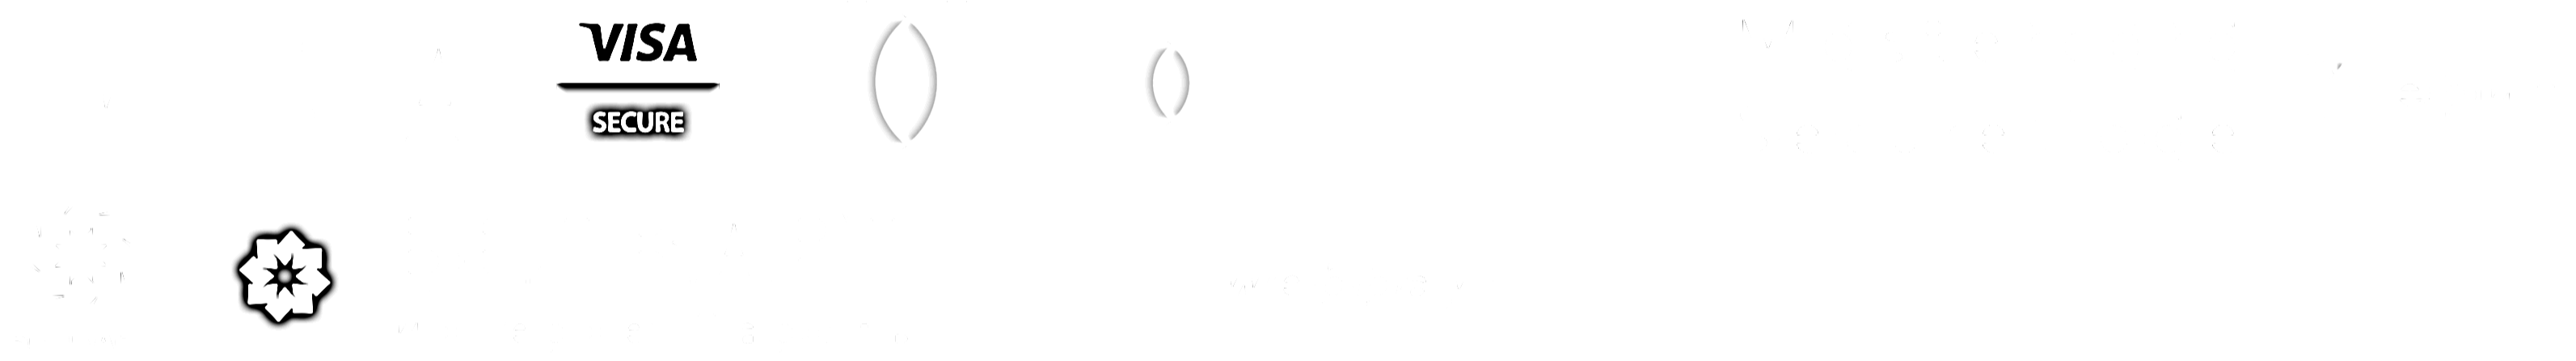 payments logos